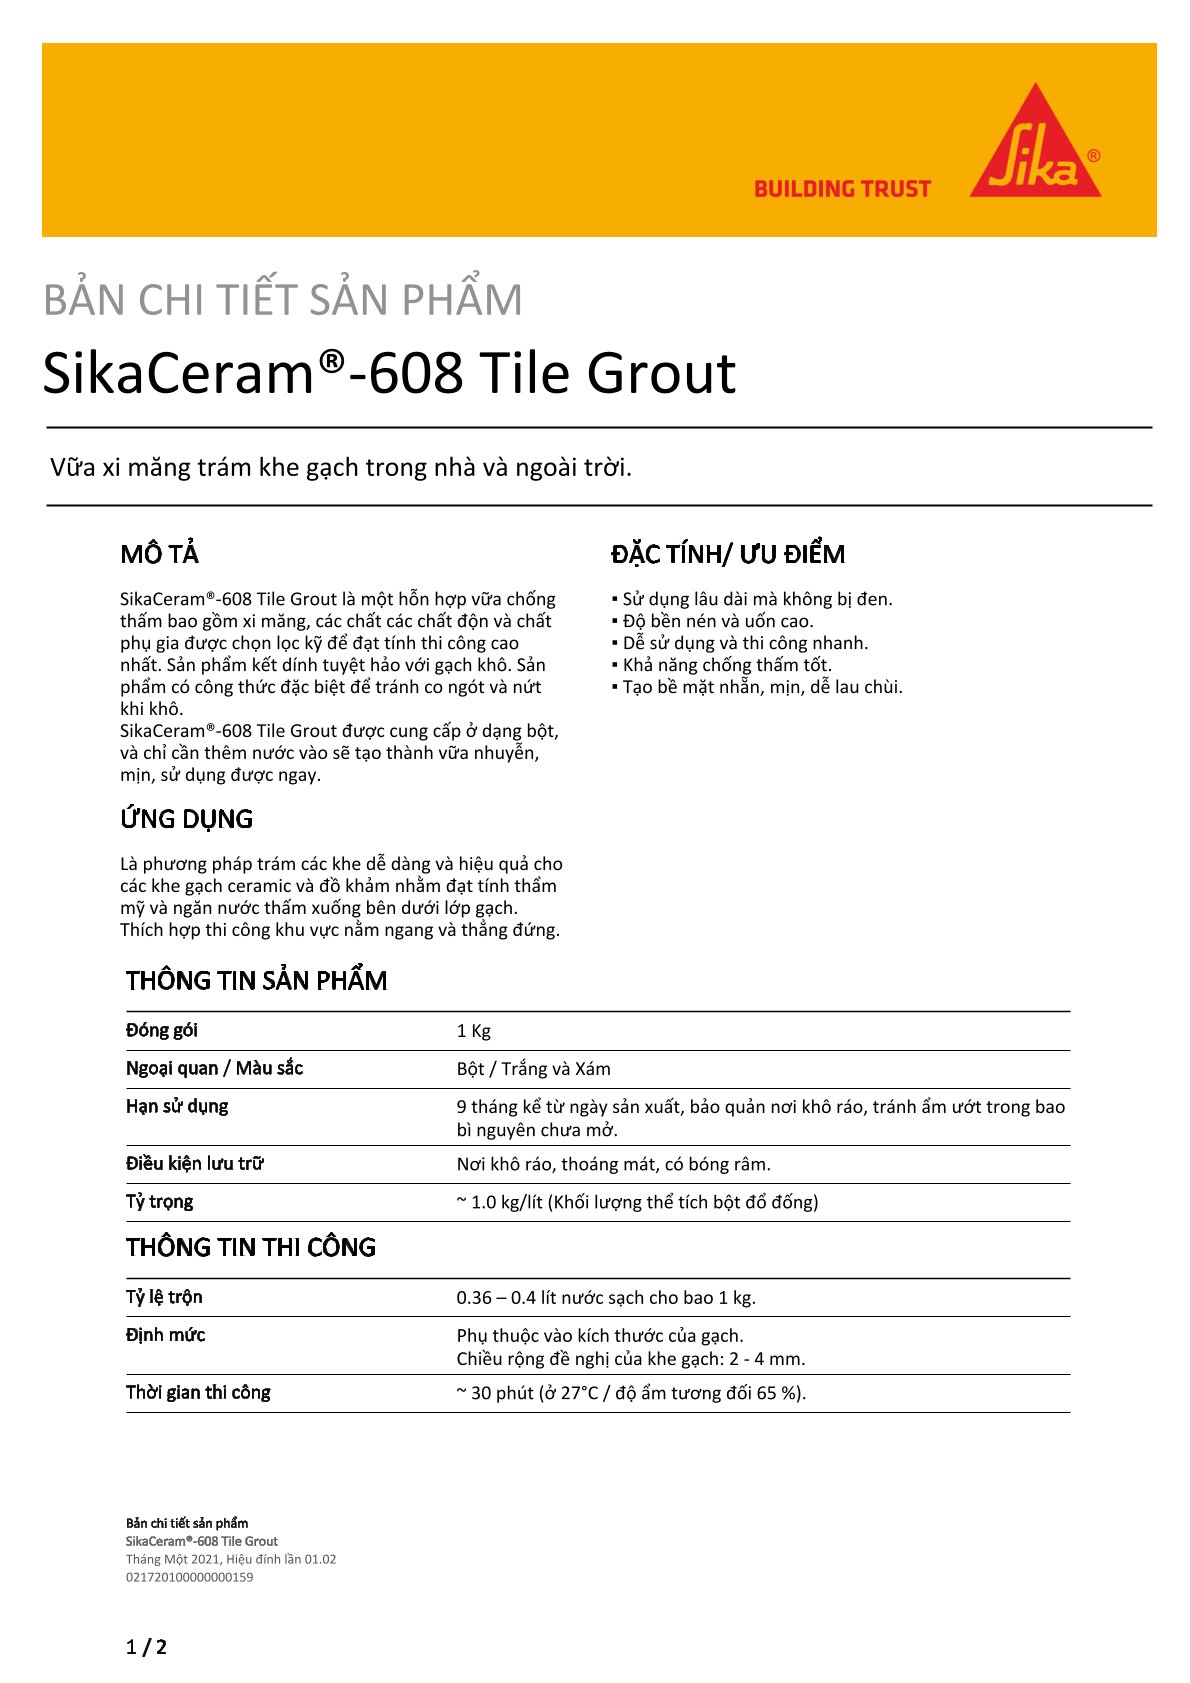 Keo chà ron SikaCeram 608 Tile Grout – Chống thấm tốt, dùng lâu ngày ít bám bẩn